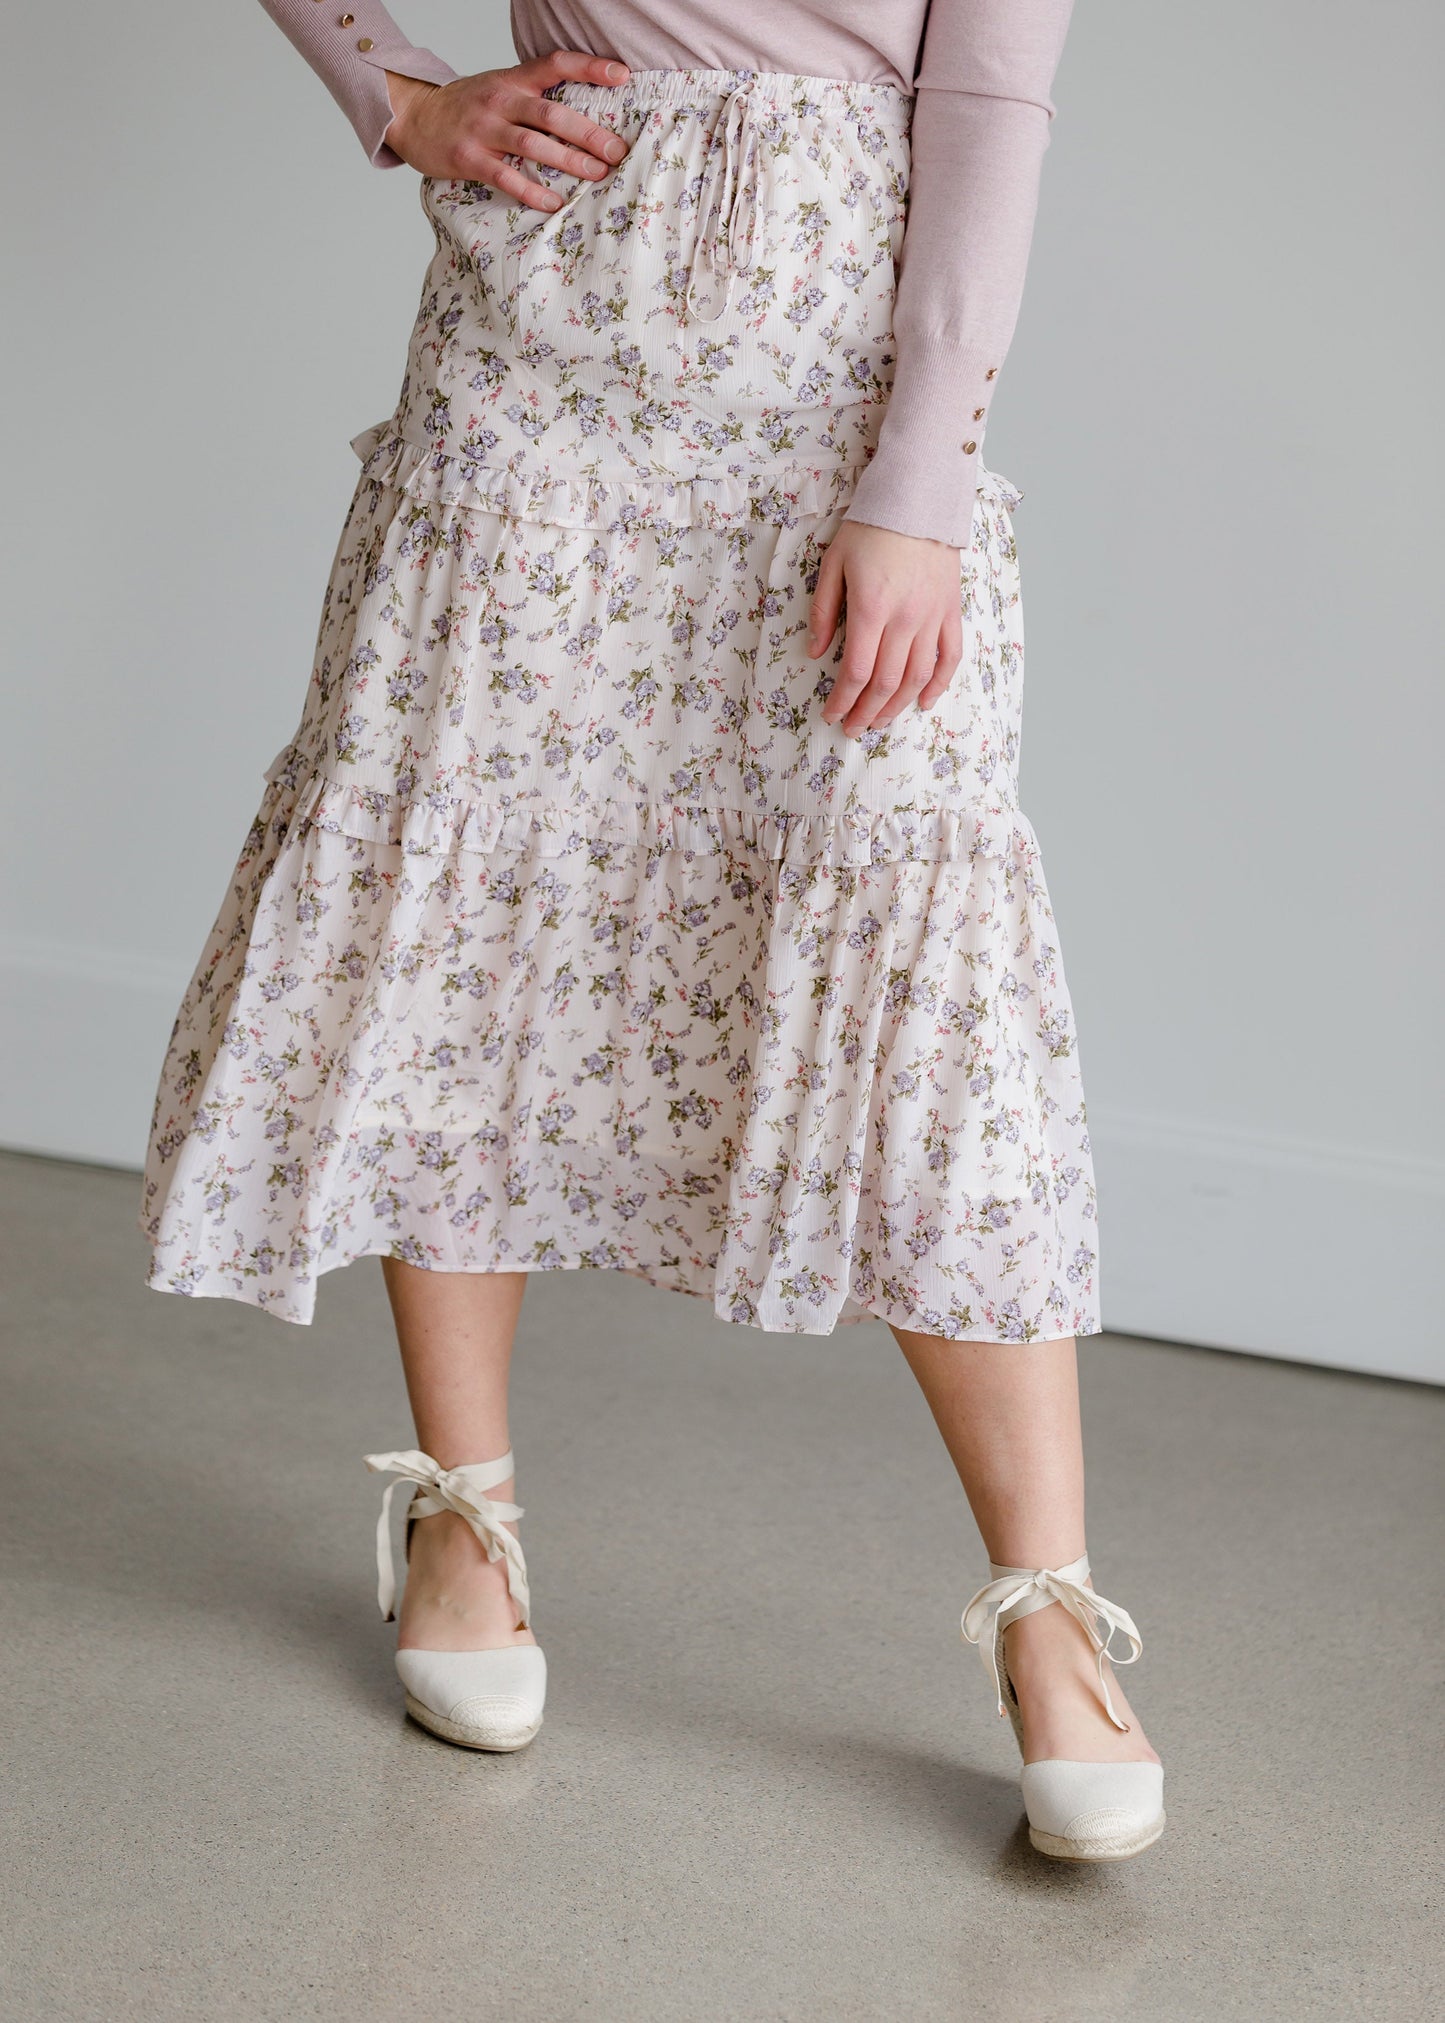 Tiered Floral High Waist Skirt - FINAL SALE Skirts